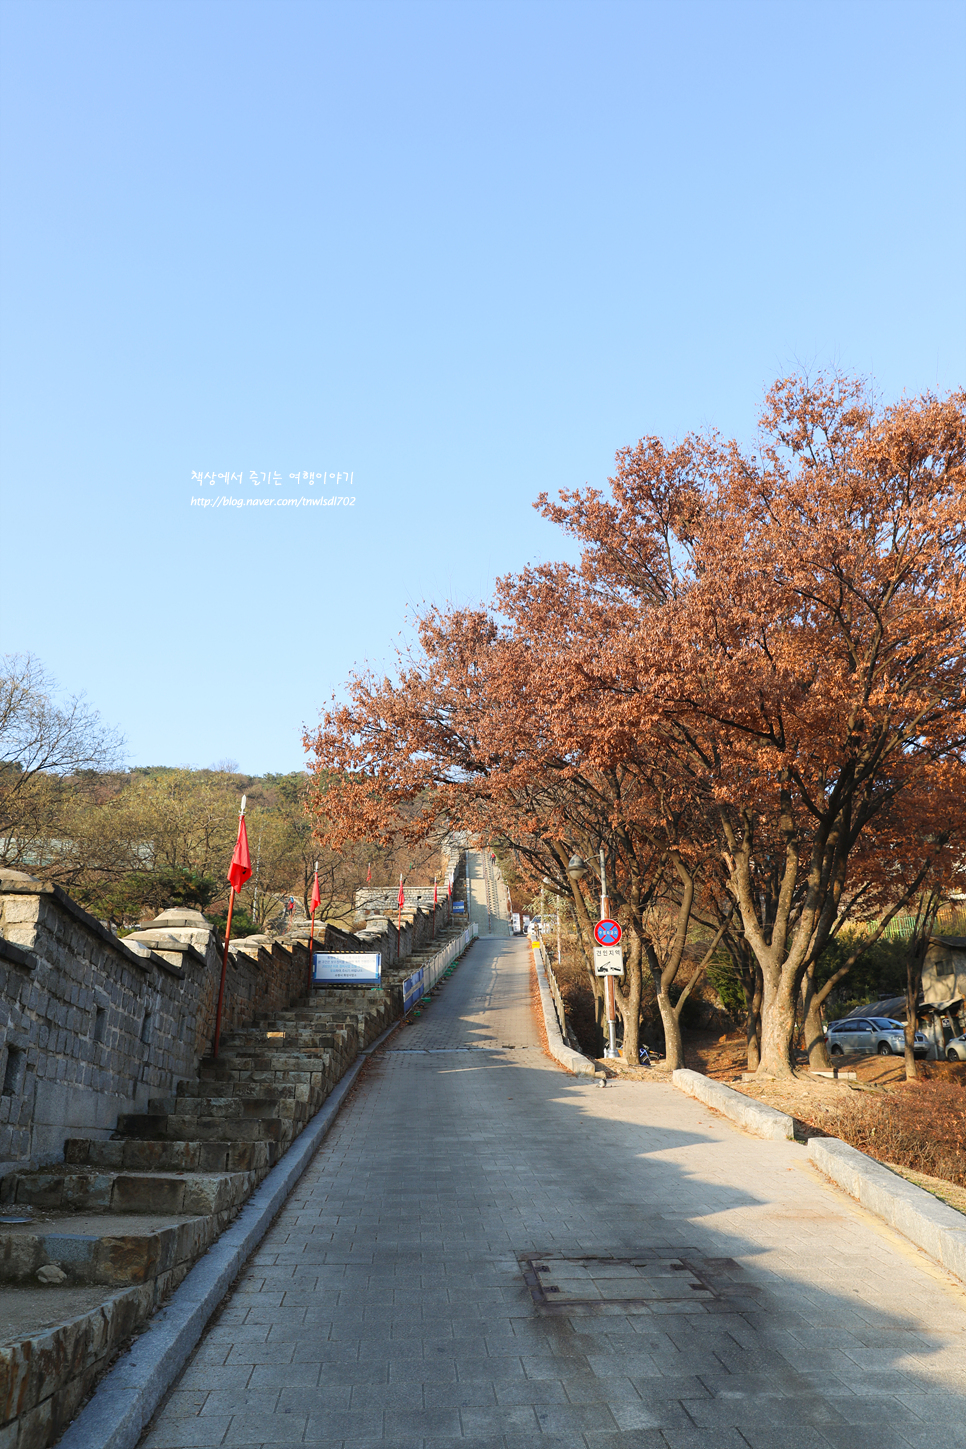 수원 팔달산 산책 수원화성 둘레길, 성곽길 탐방 팔달문에서 서장대까지